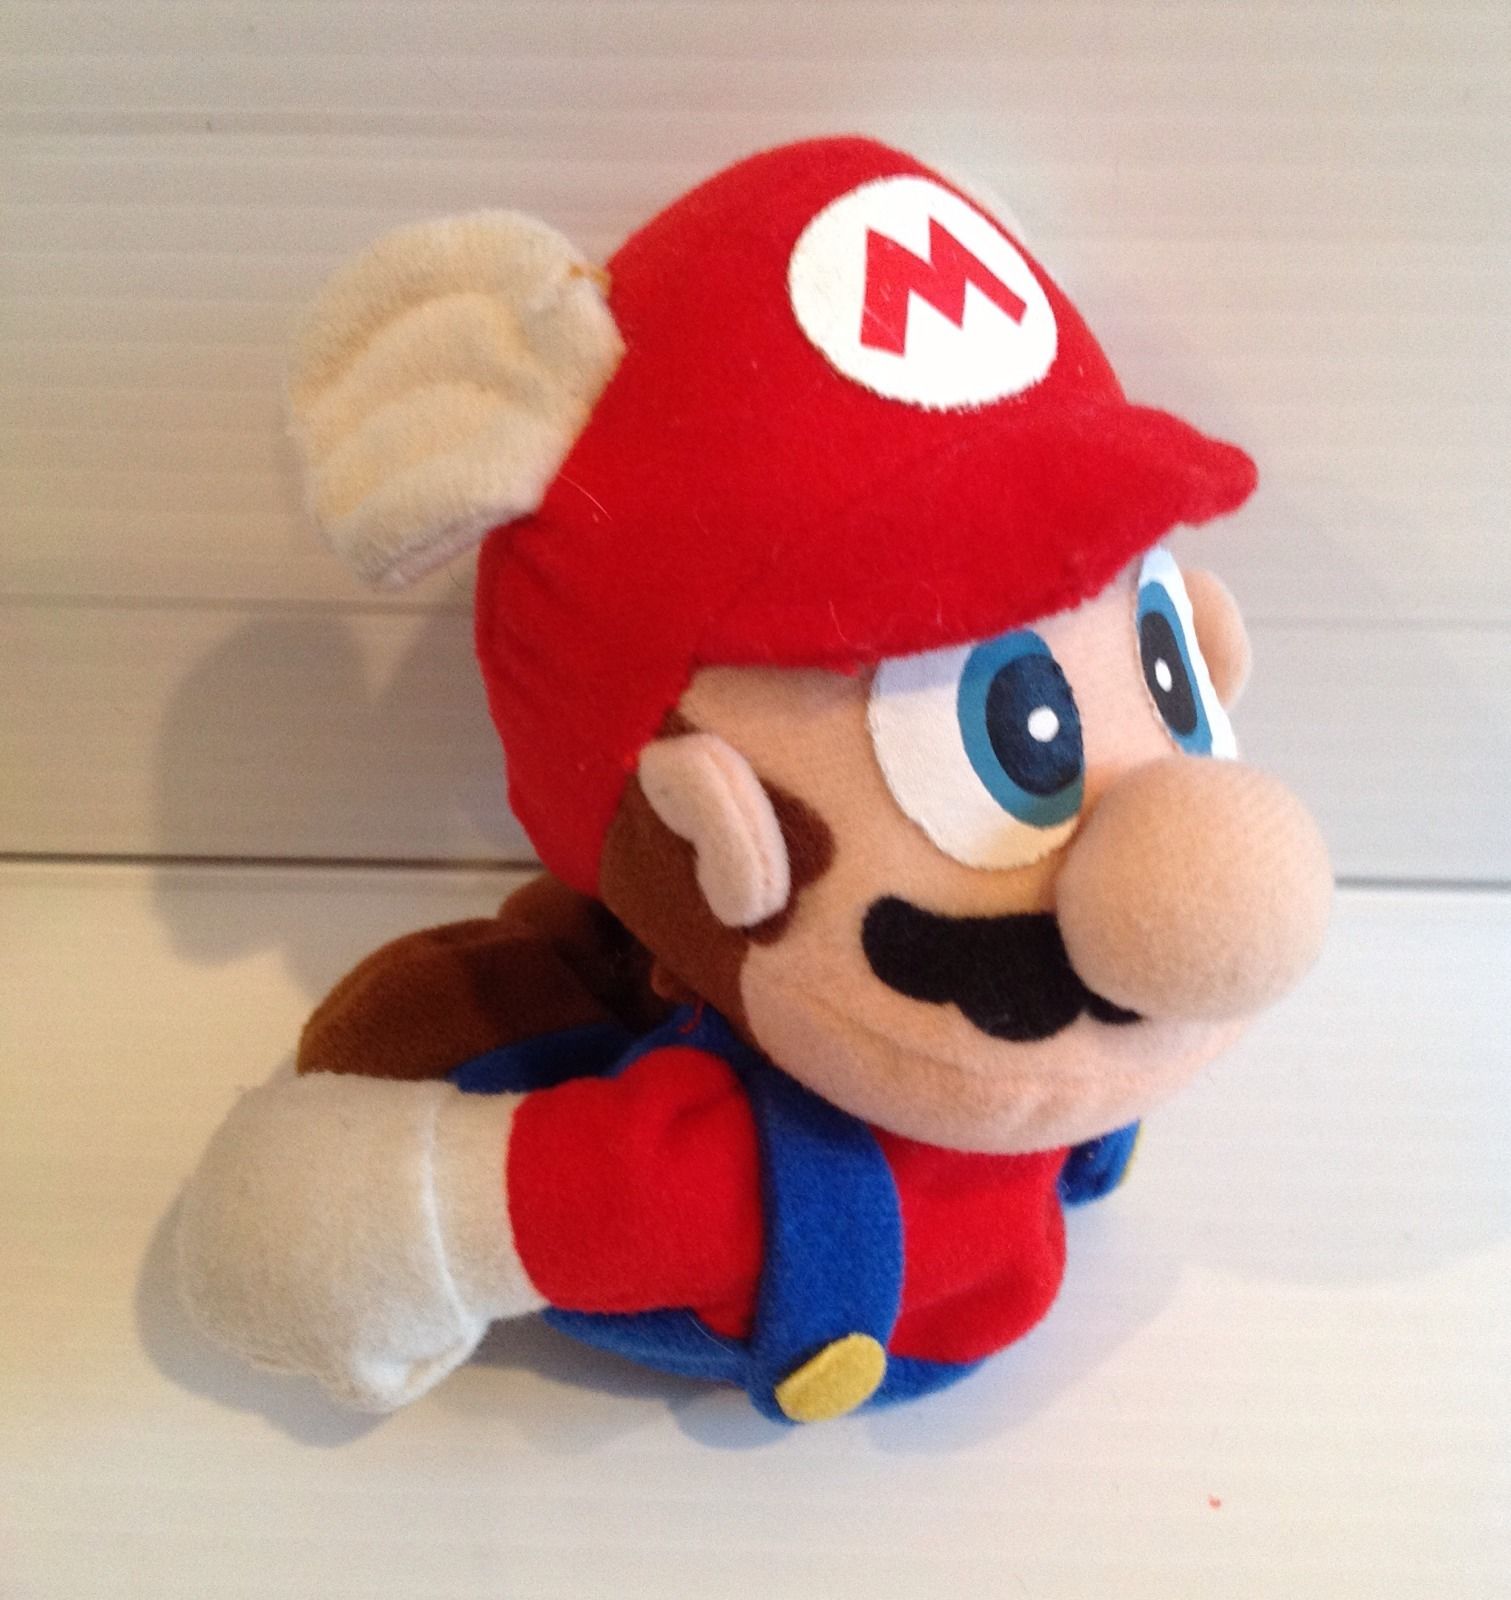 Super Mario 64 Plush: